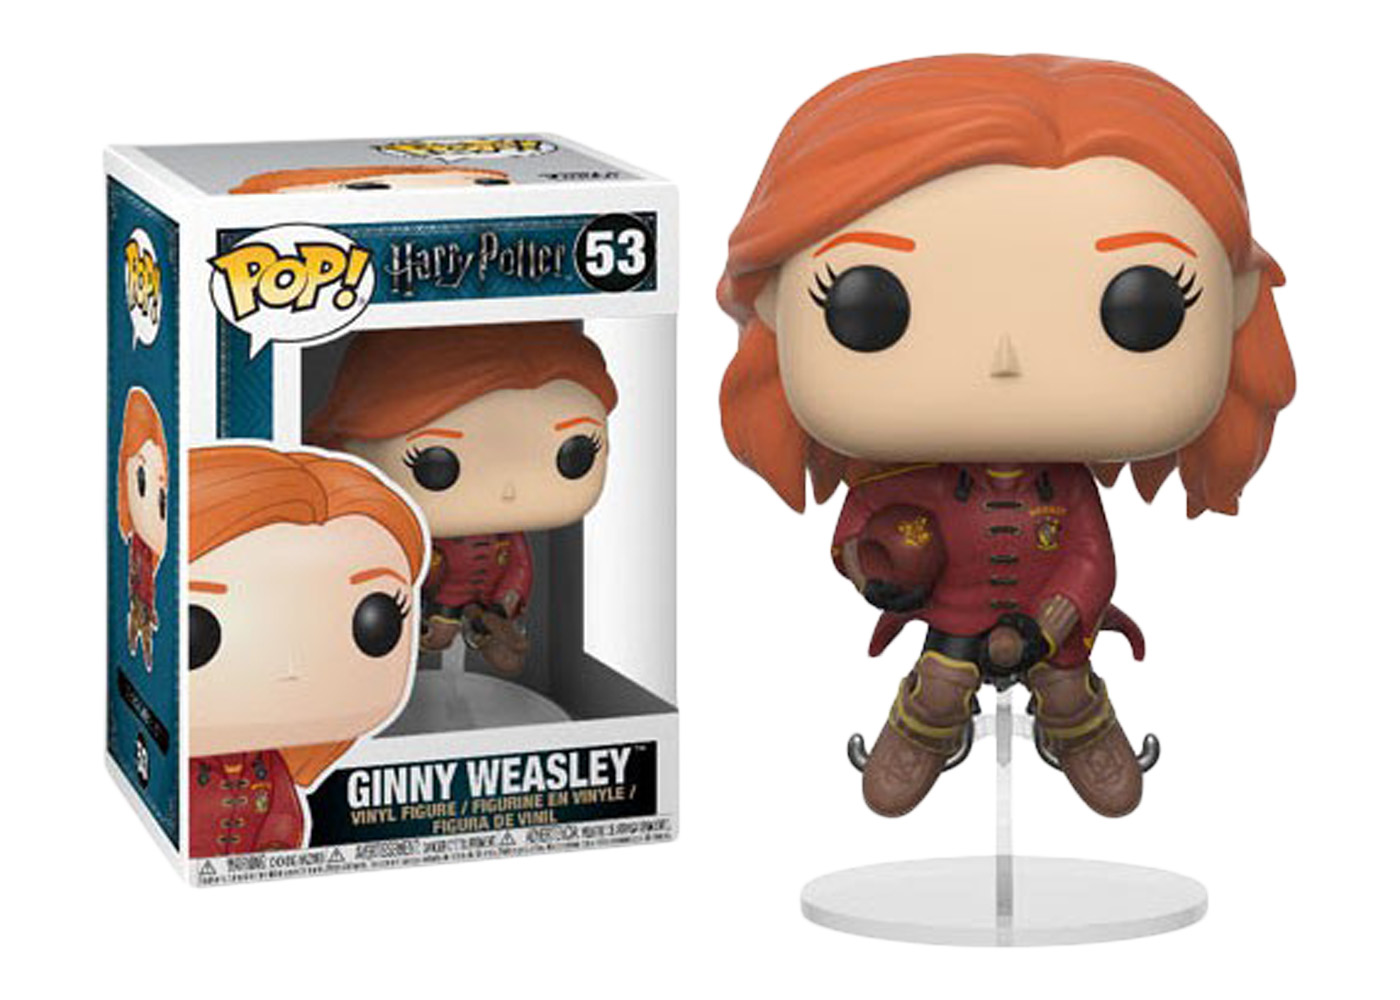 Harry Potter Vinyl Figure NEW Funko Pop Quidditch Ginny Weasley on Broom 